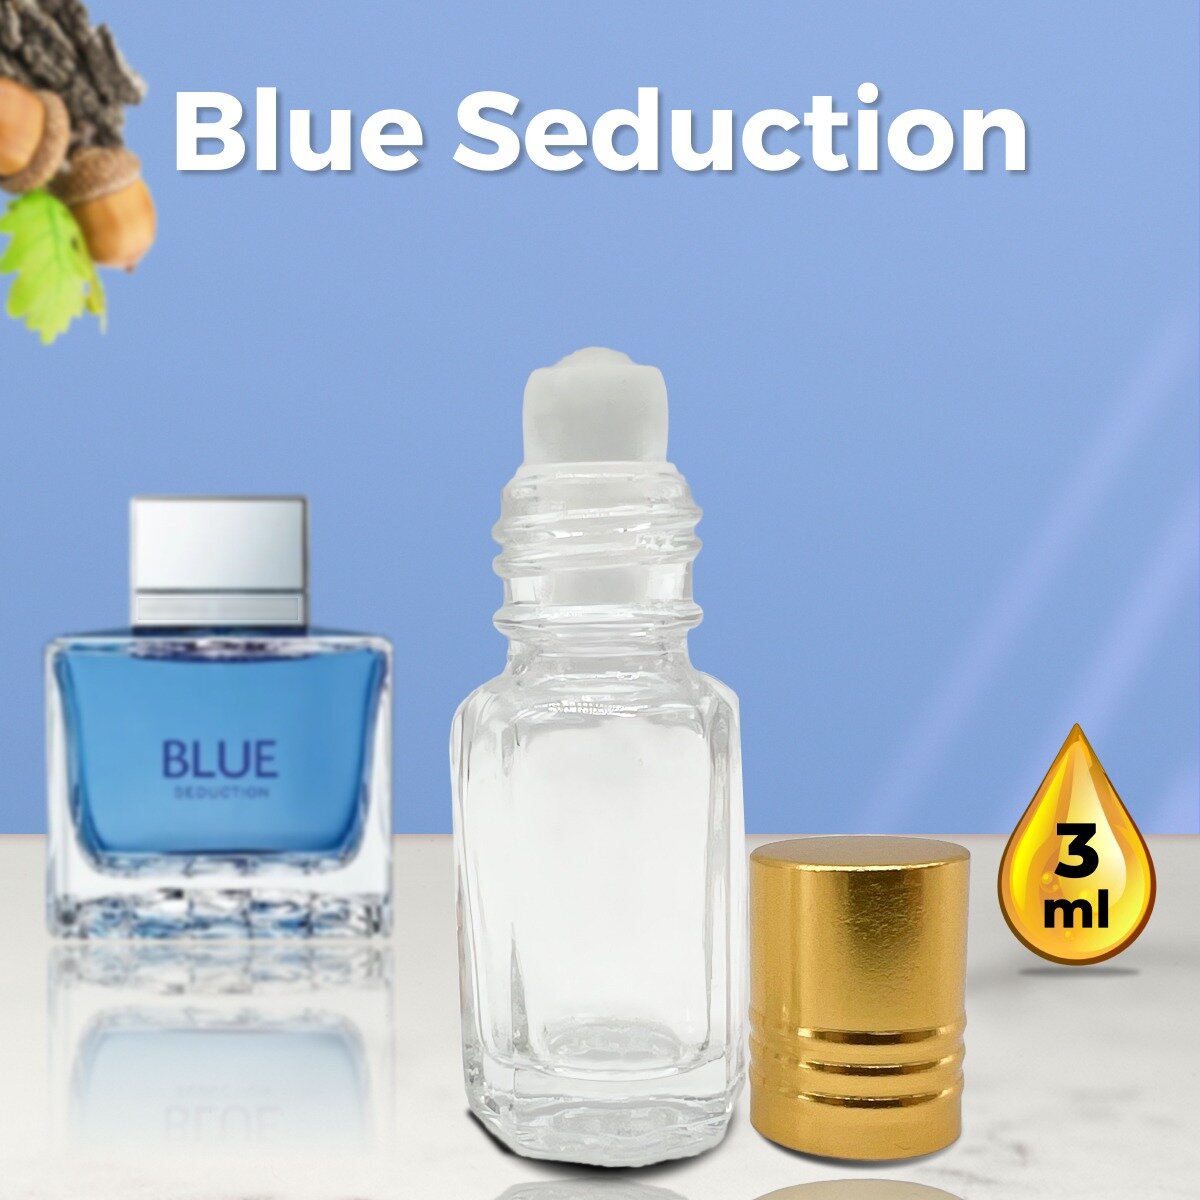 Gratus Parfum Blue Seduction Man духи мужские масляные 3 мл (масло) + подарок